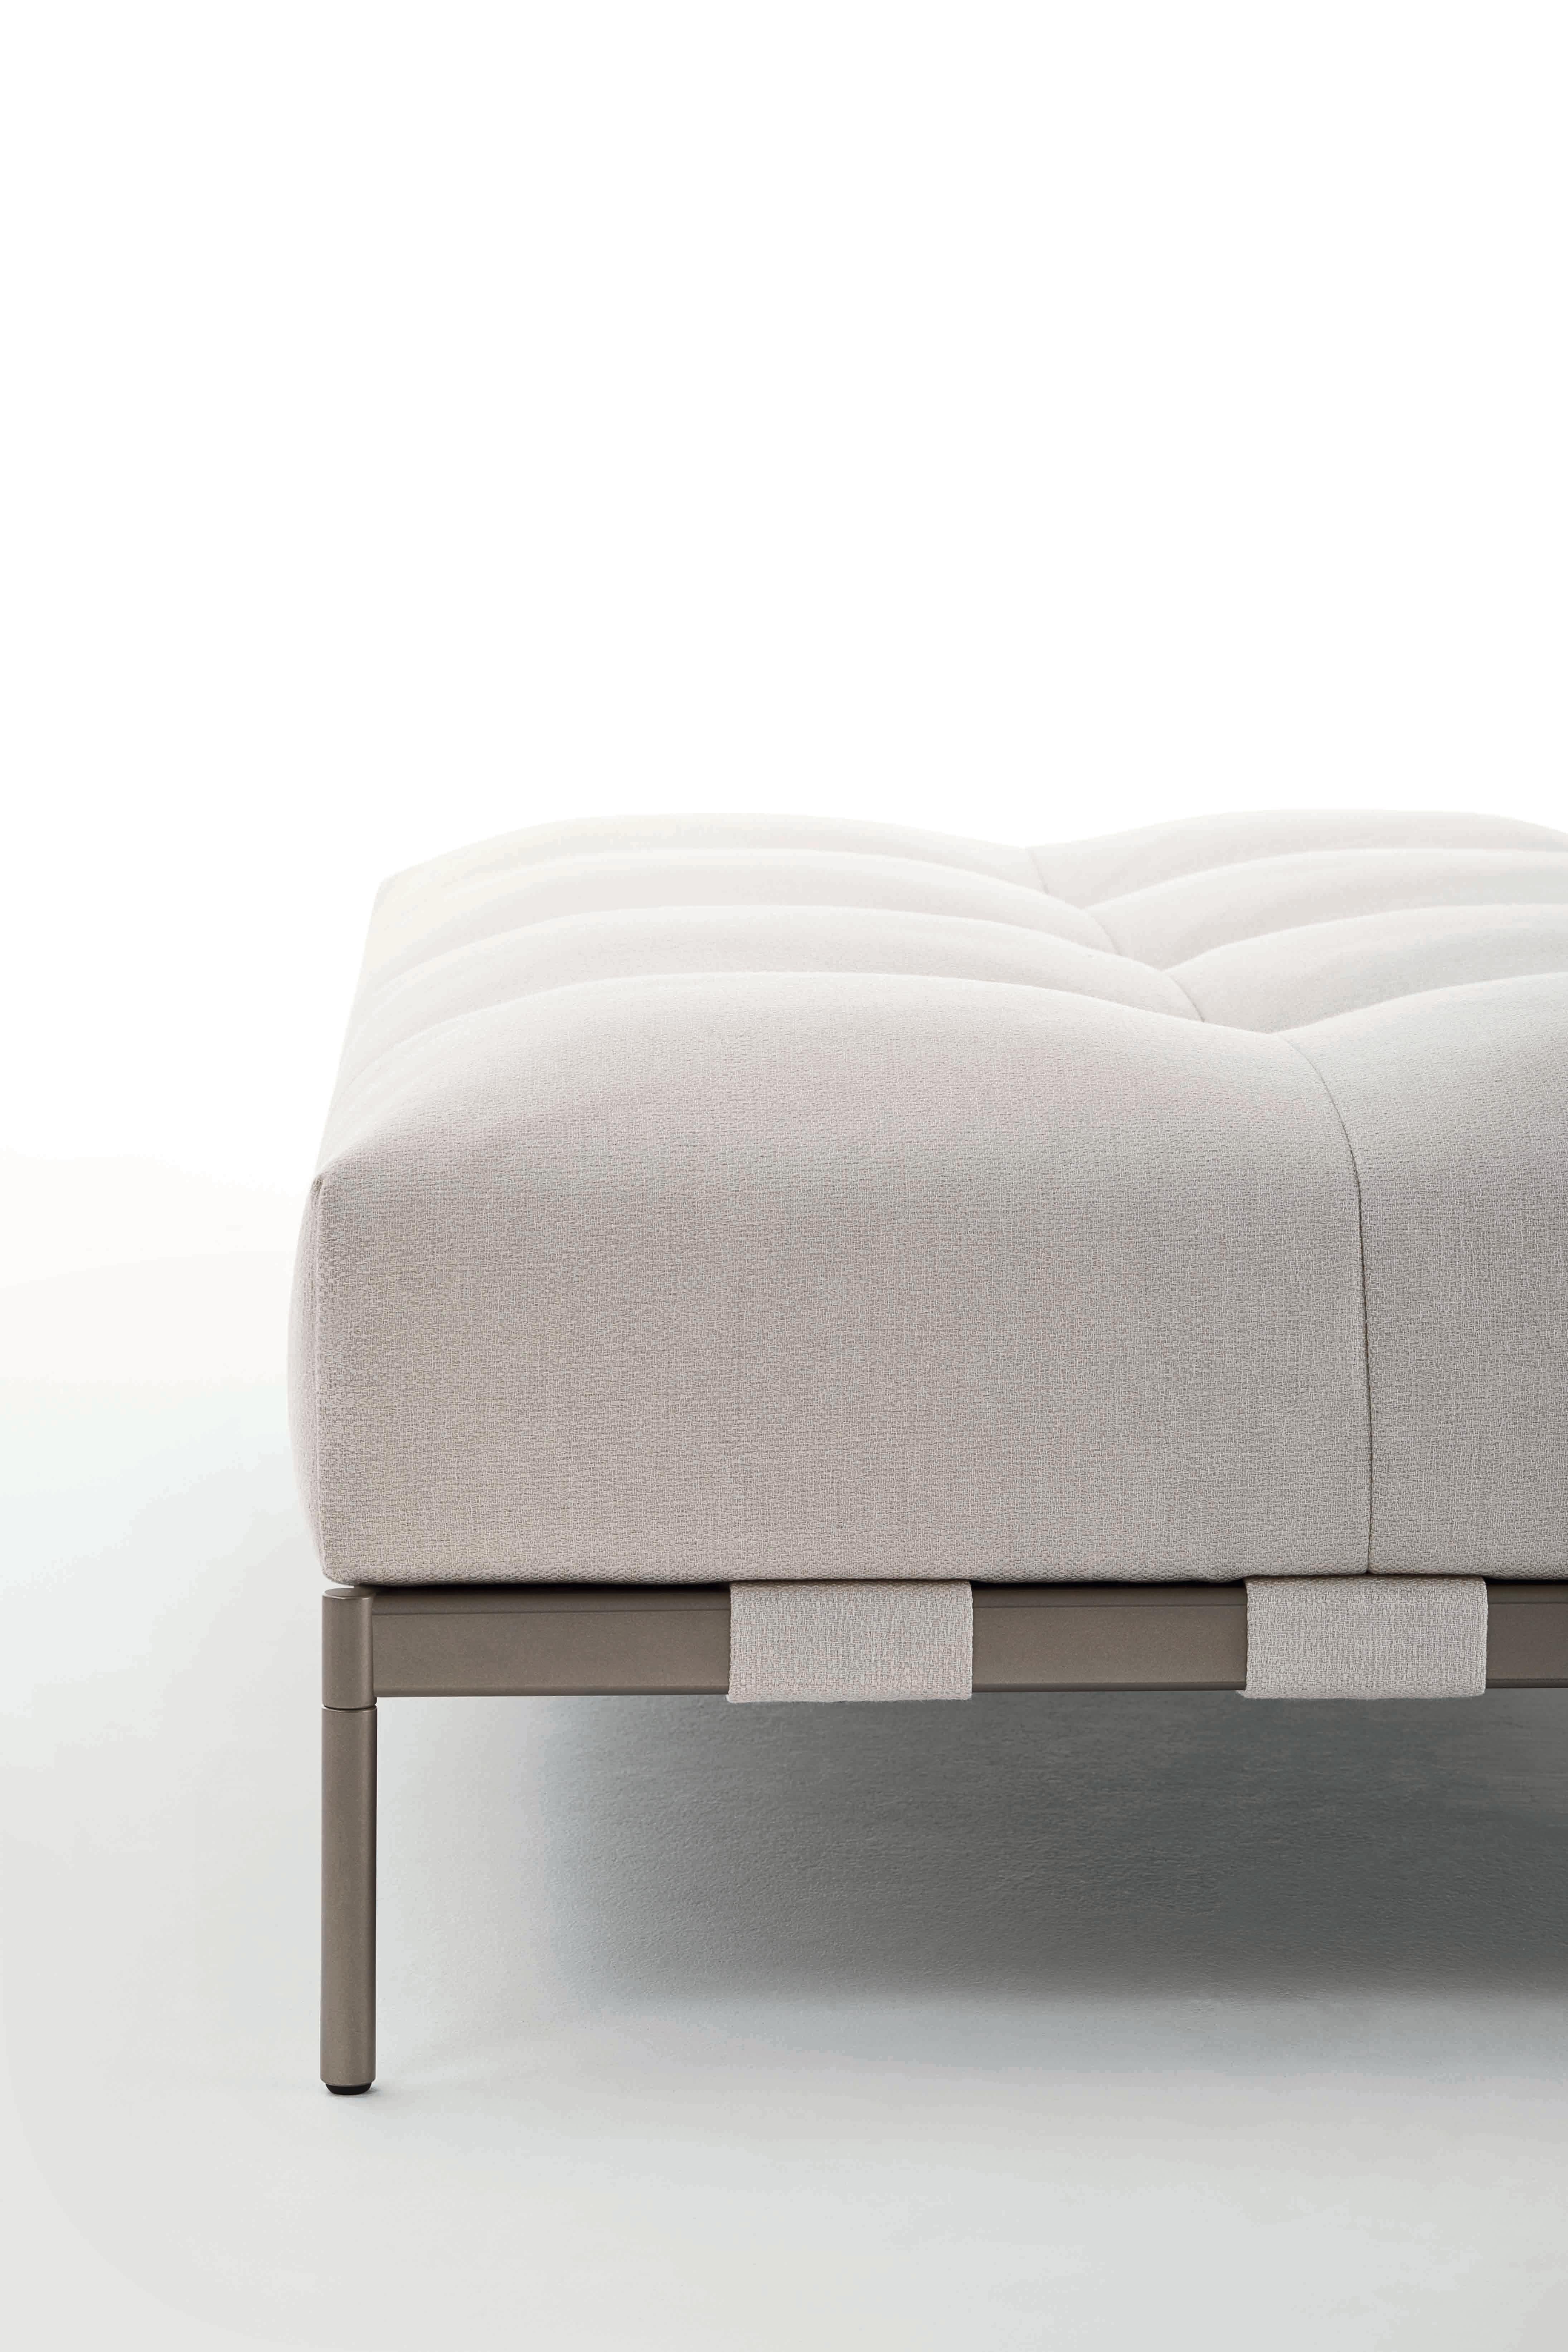 Pixel Light, le nouveau système de sièges conçu par Sergio Bicego, naît du désir d'élargir le concept de flexibilité des formes pour atteindre un concept plus sophistiqué de fluidité des espaces. Nous avons étudié de nouvelles possibilités et